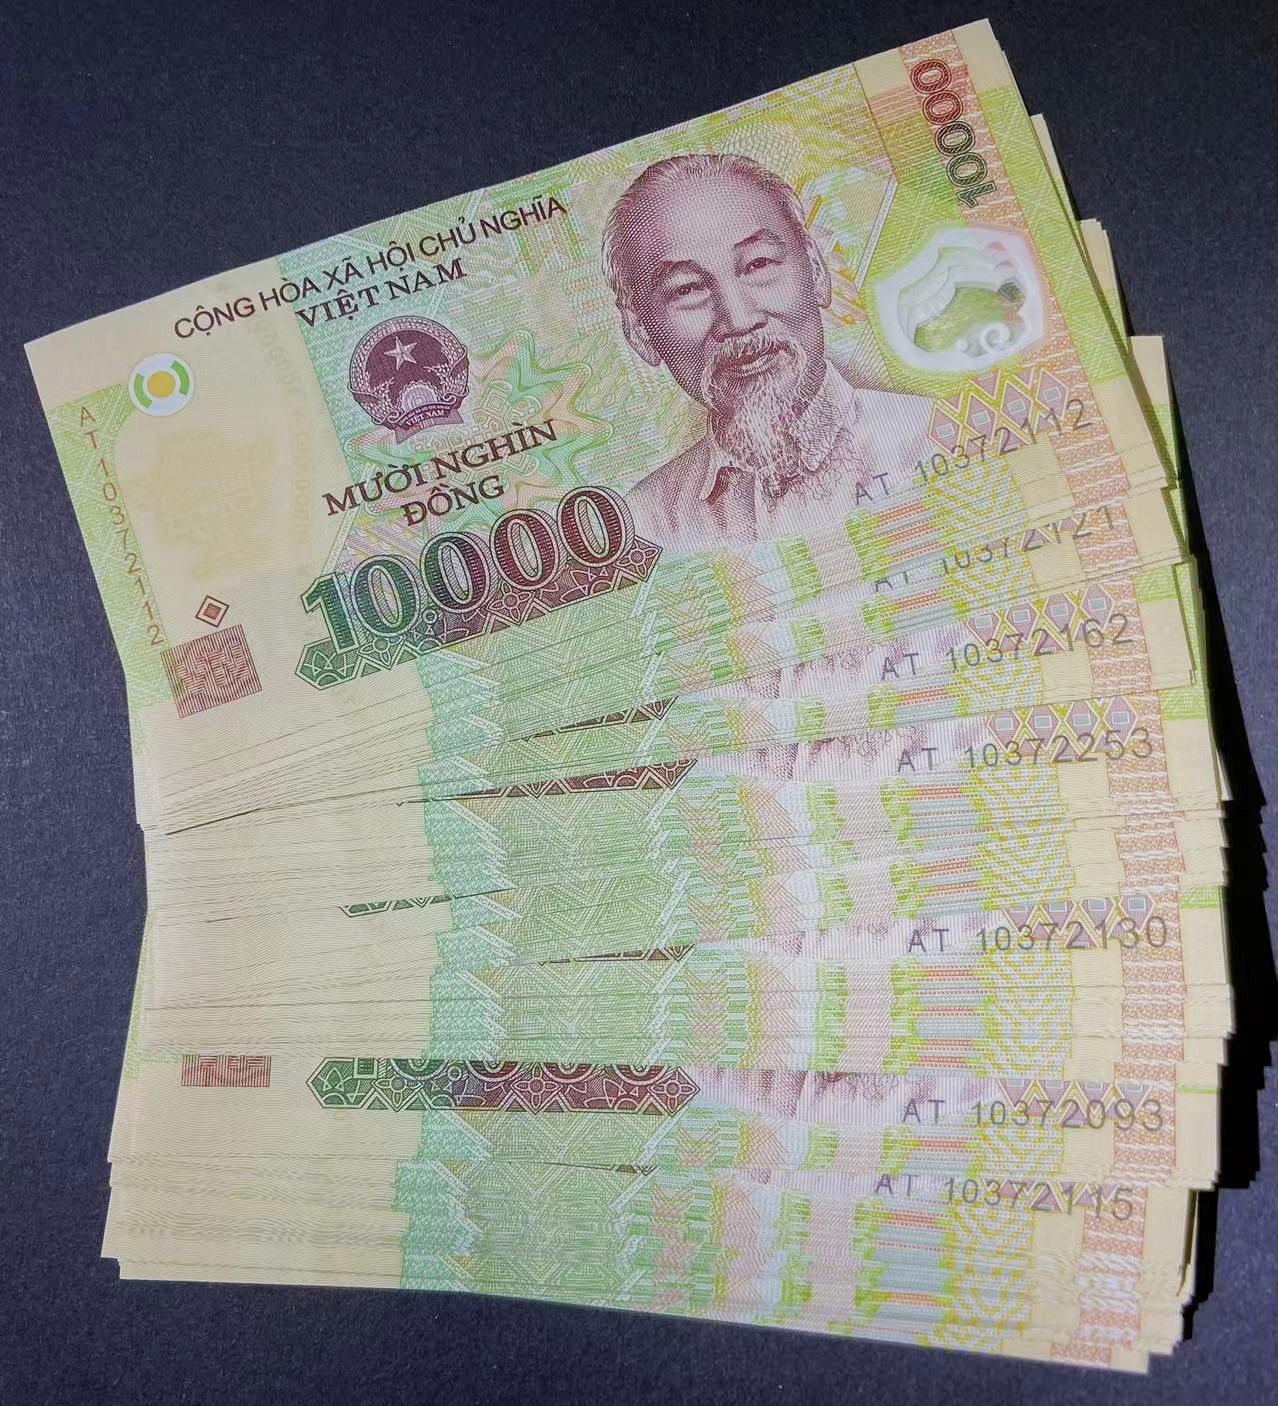 50元越南币图片,越南币图片50万 - 伤感说说吧